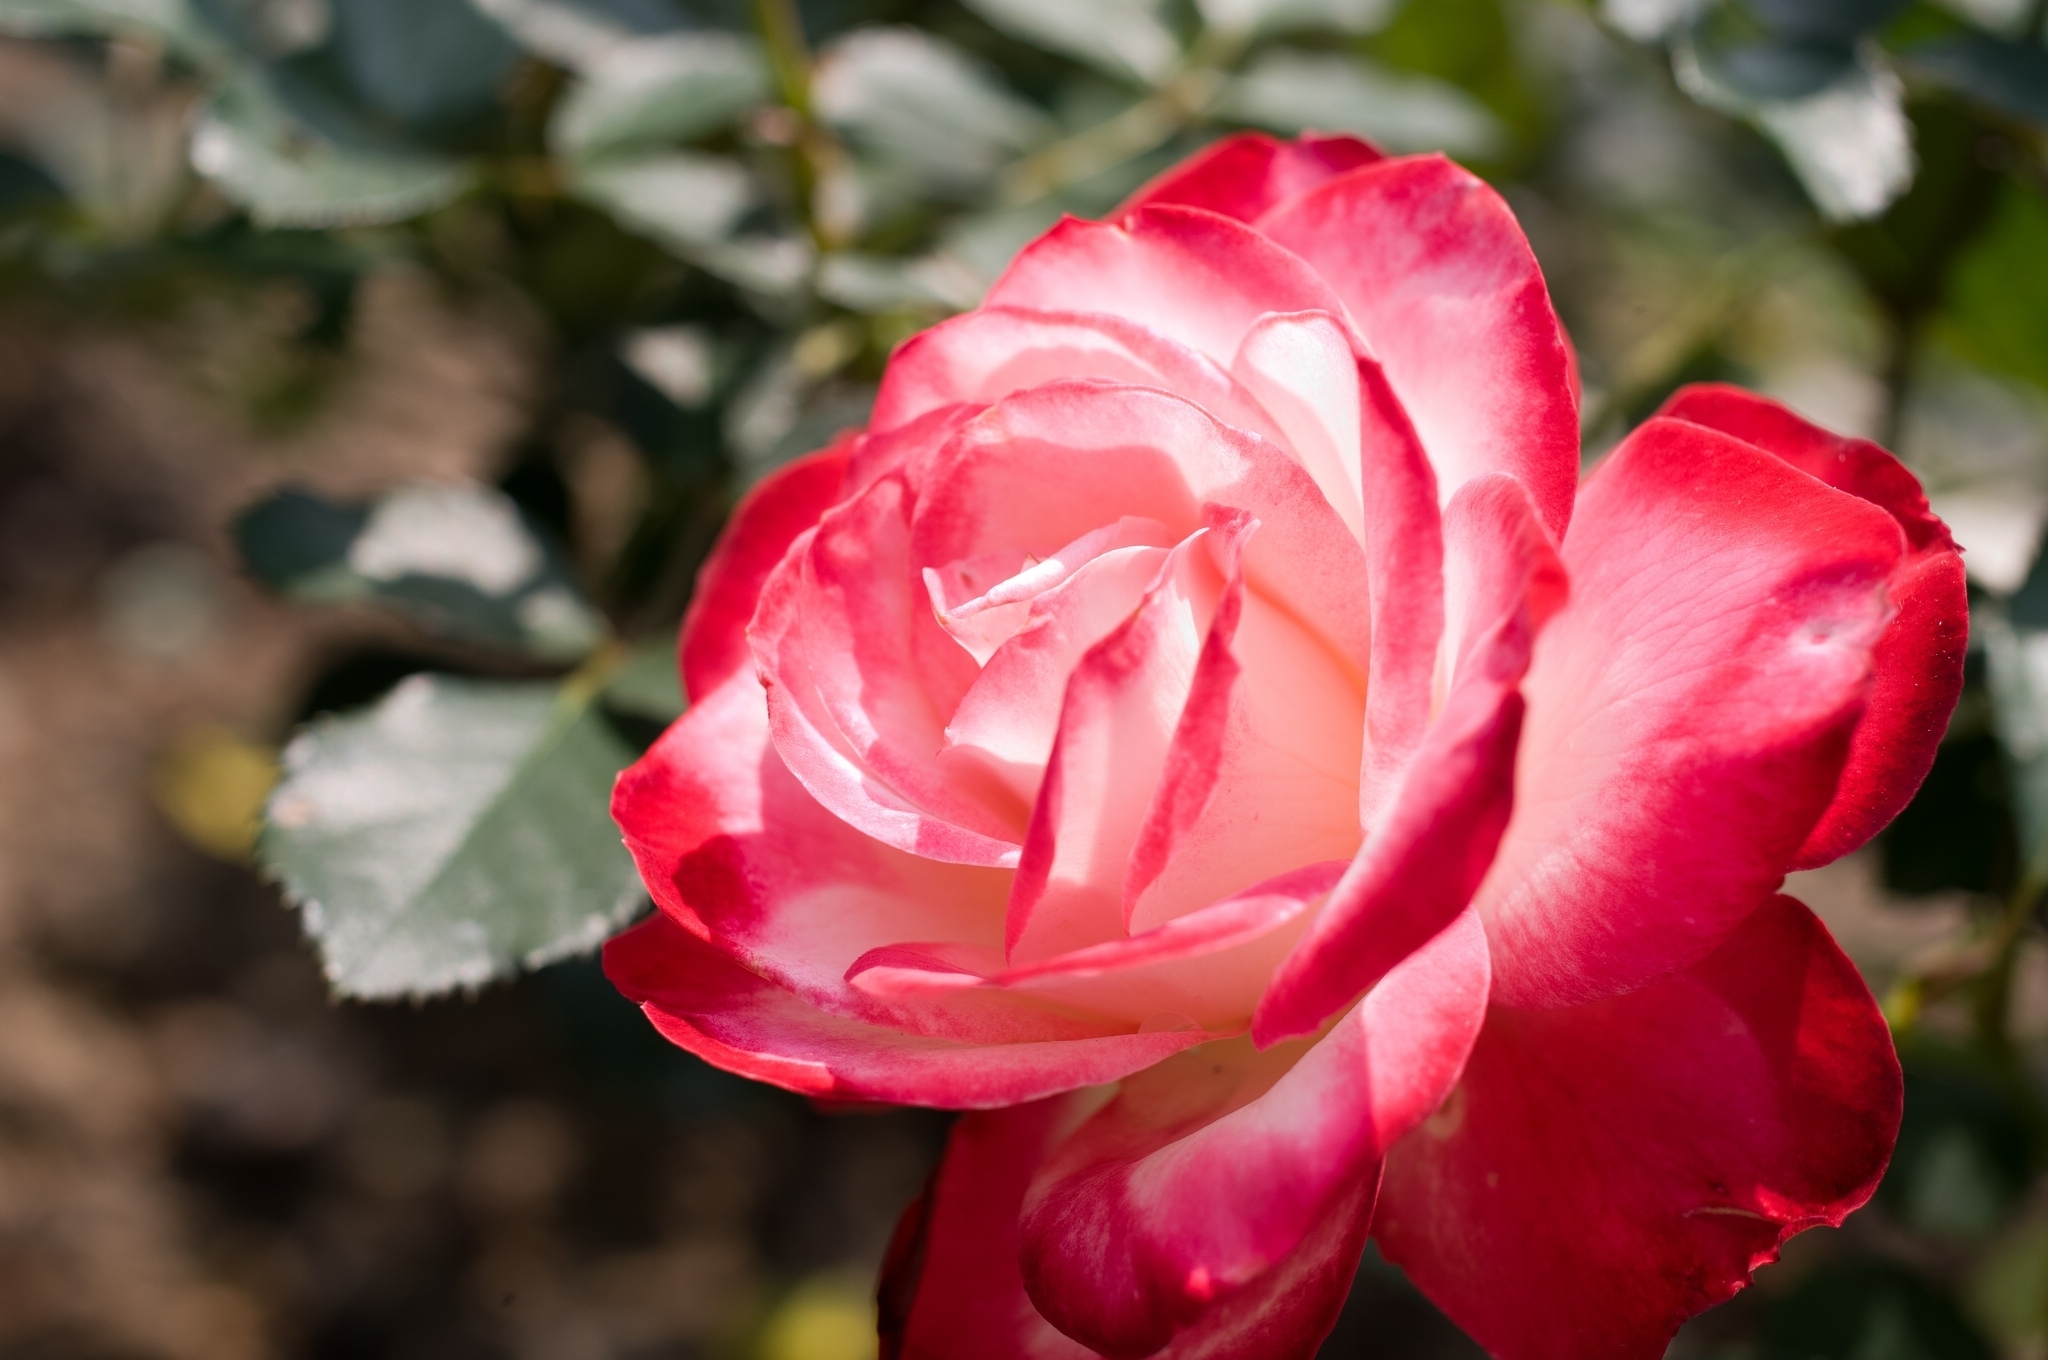 Bilder von Rot Rosen Blüte Großansicht 2048x1360 Rose Blumen hautnah Nahaufnahme